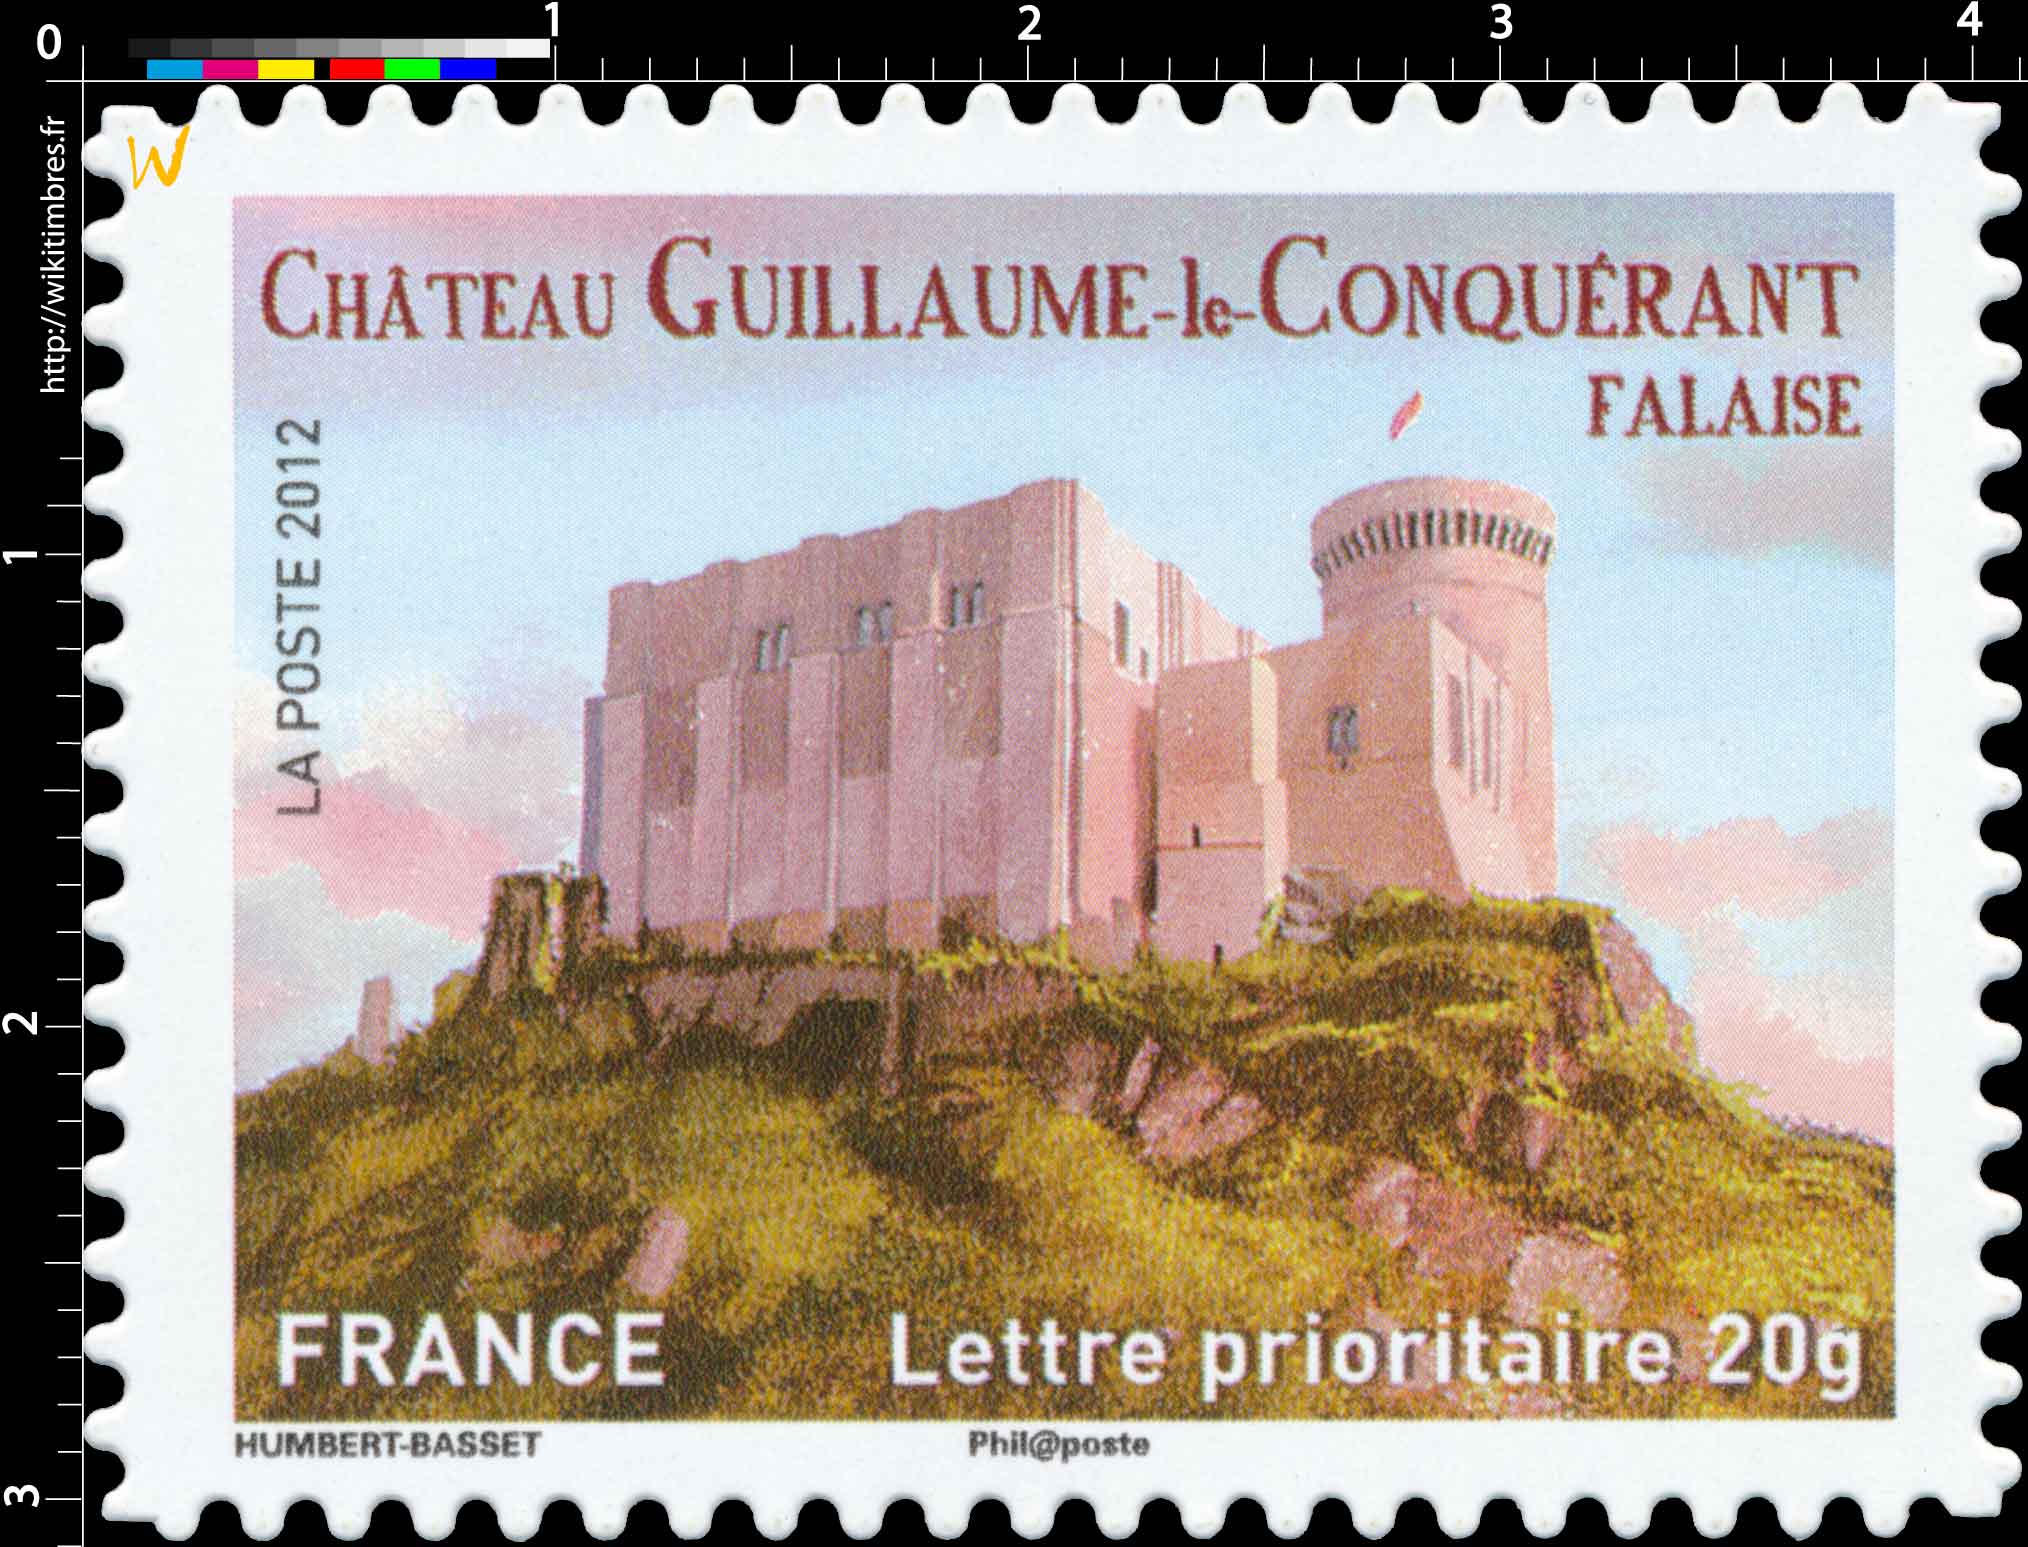 2012 Château Guillaume-le-Conquérant Falaise